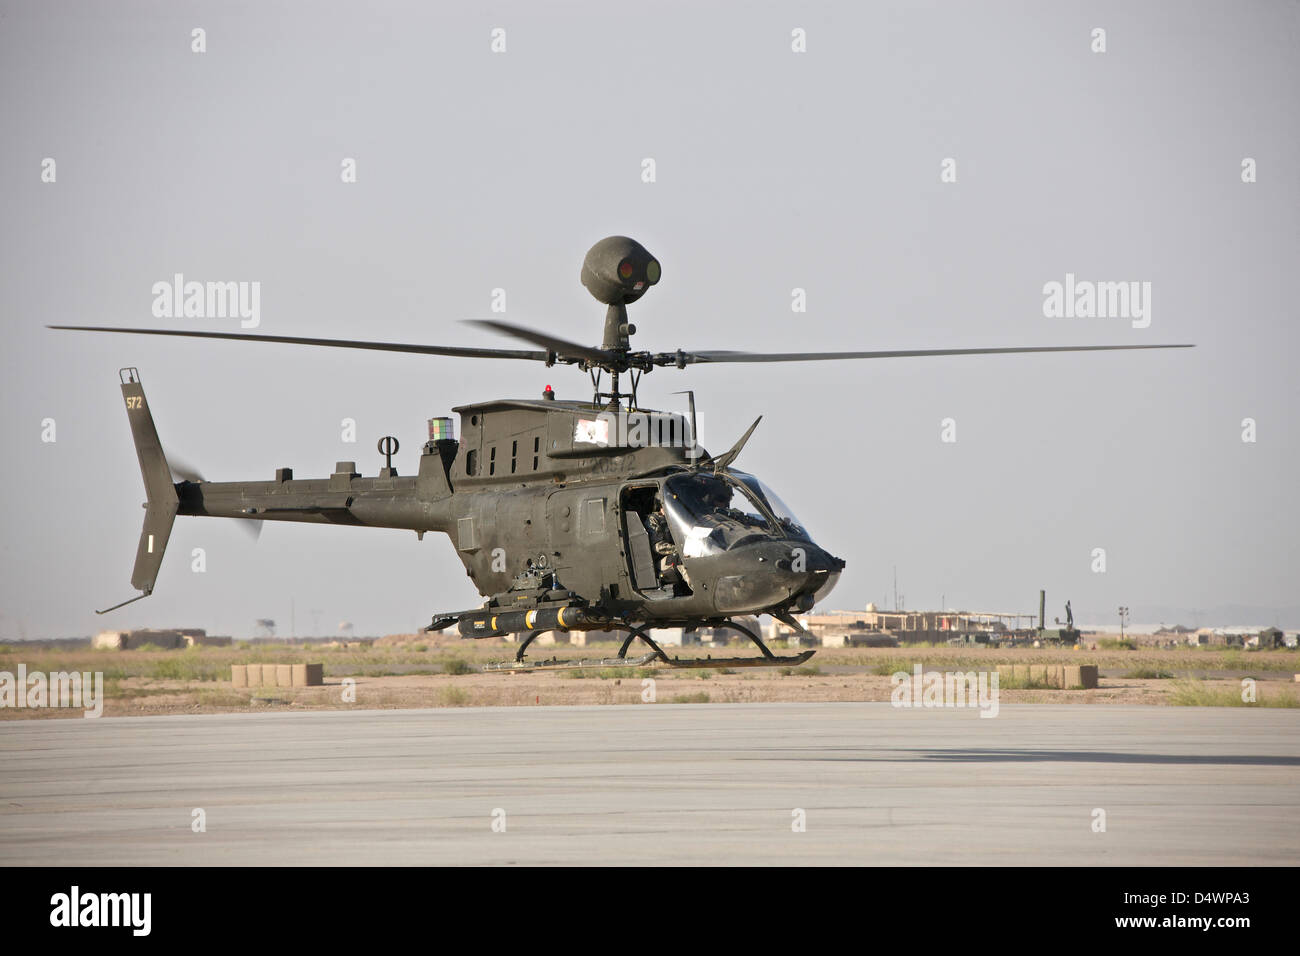 Un OH-58D Kiowa helicóptero despega desde la COB Speicher, Tikrit, Iraq, durante la Operación Libertad Iraquí. Foto de stock